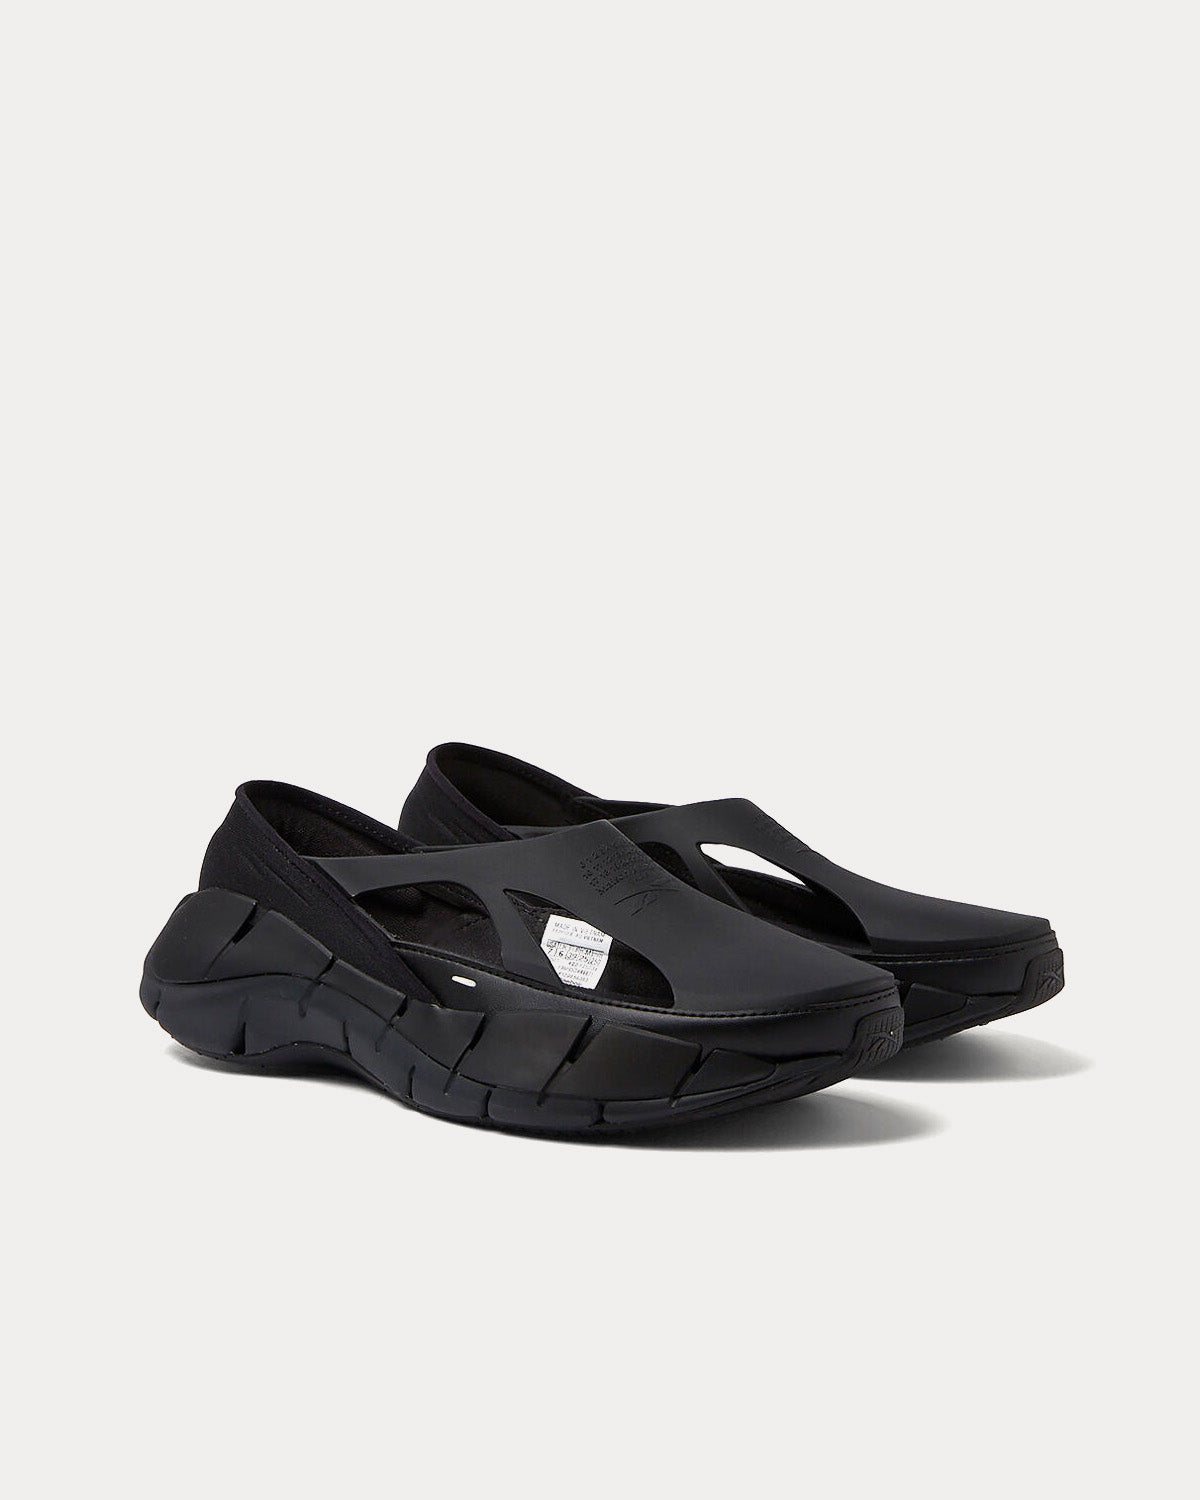 Reebok X Maison Margiela - Tier 1 Croafer Black Slip On Sneakers